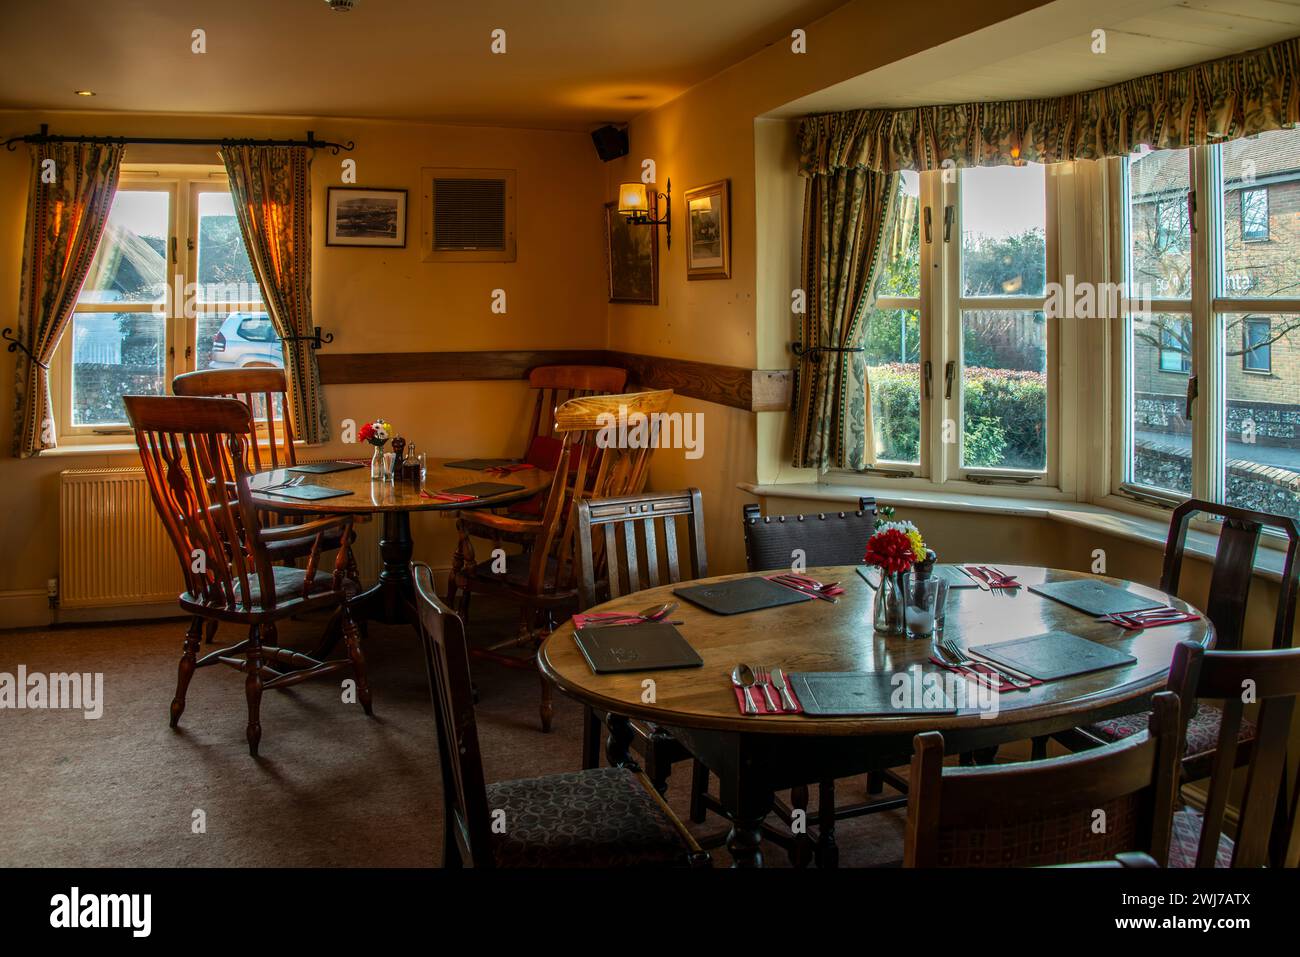 Das Innere eines Wirtshauses, das warm und einladend ist, mit Tischen, die für die Gäste bereit sind, die kulinarischen Köstlichkeiten der Pubs zu probieren. Stockfoto